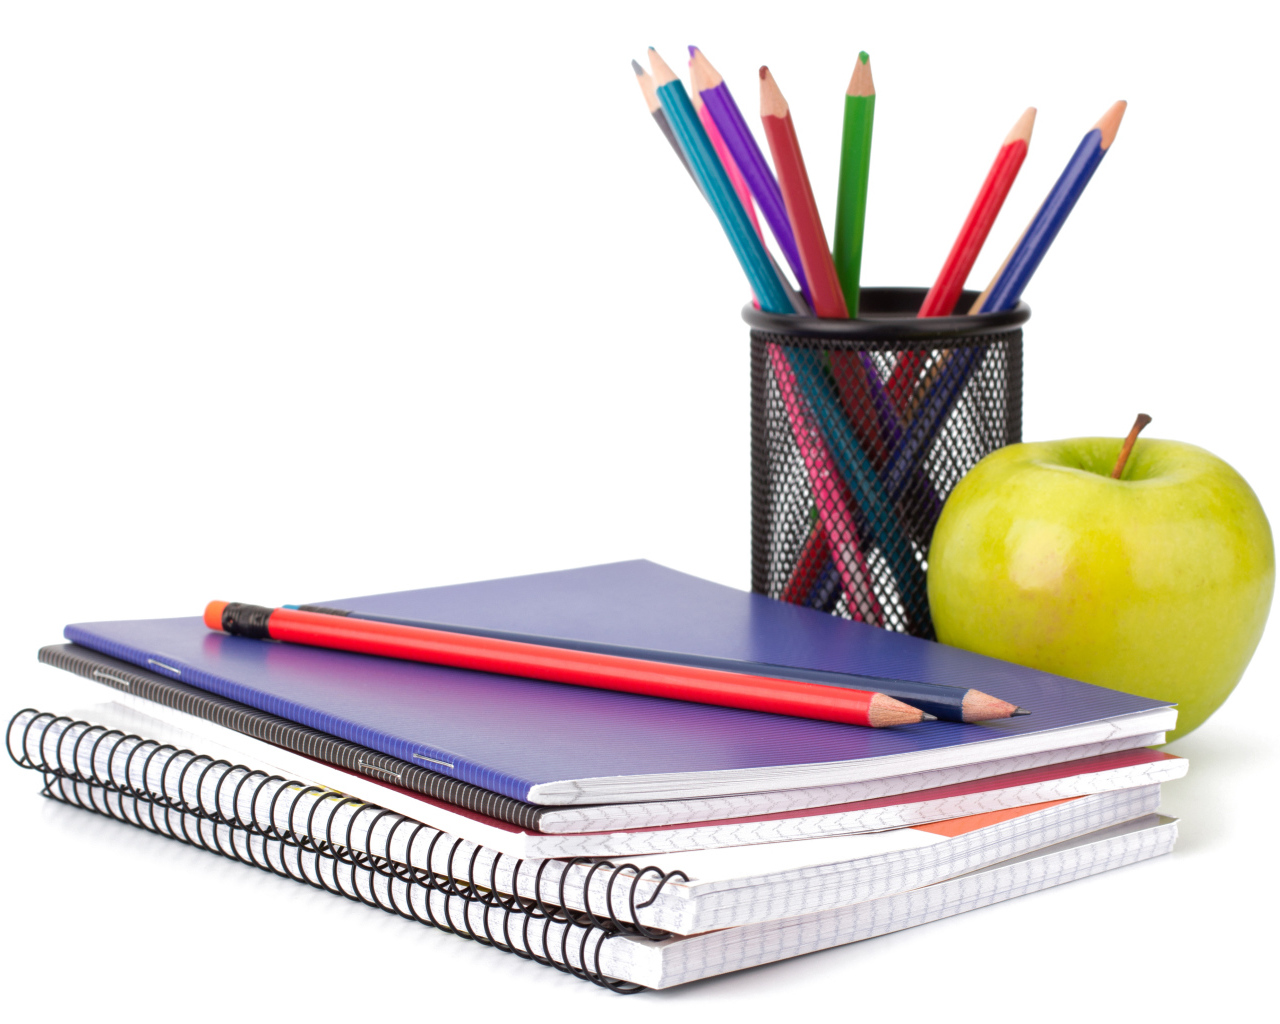 Тетради, яблоко и карандаши на белом фоне 